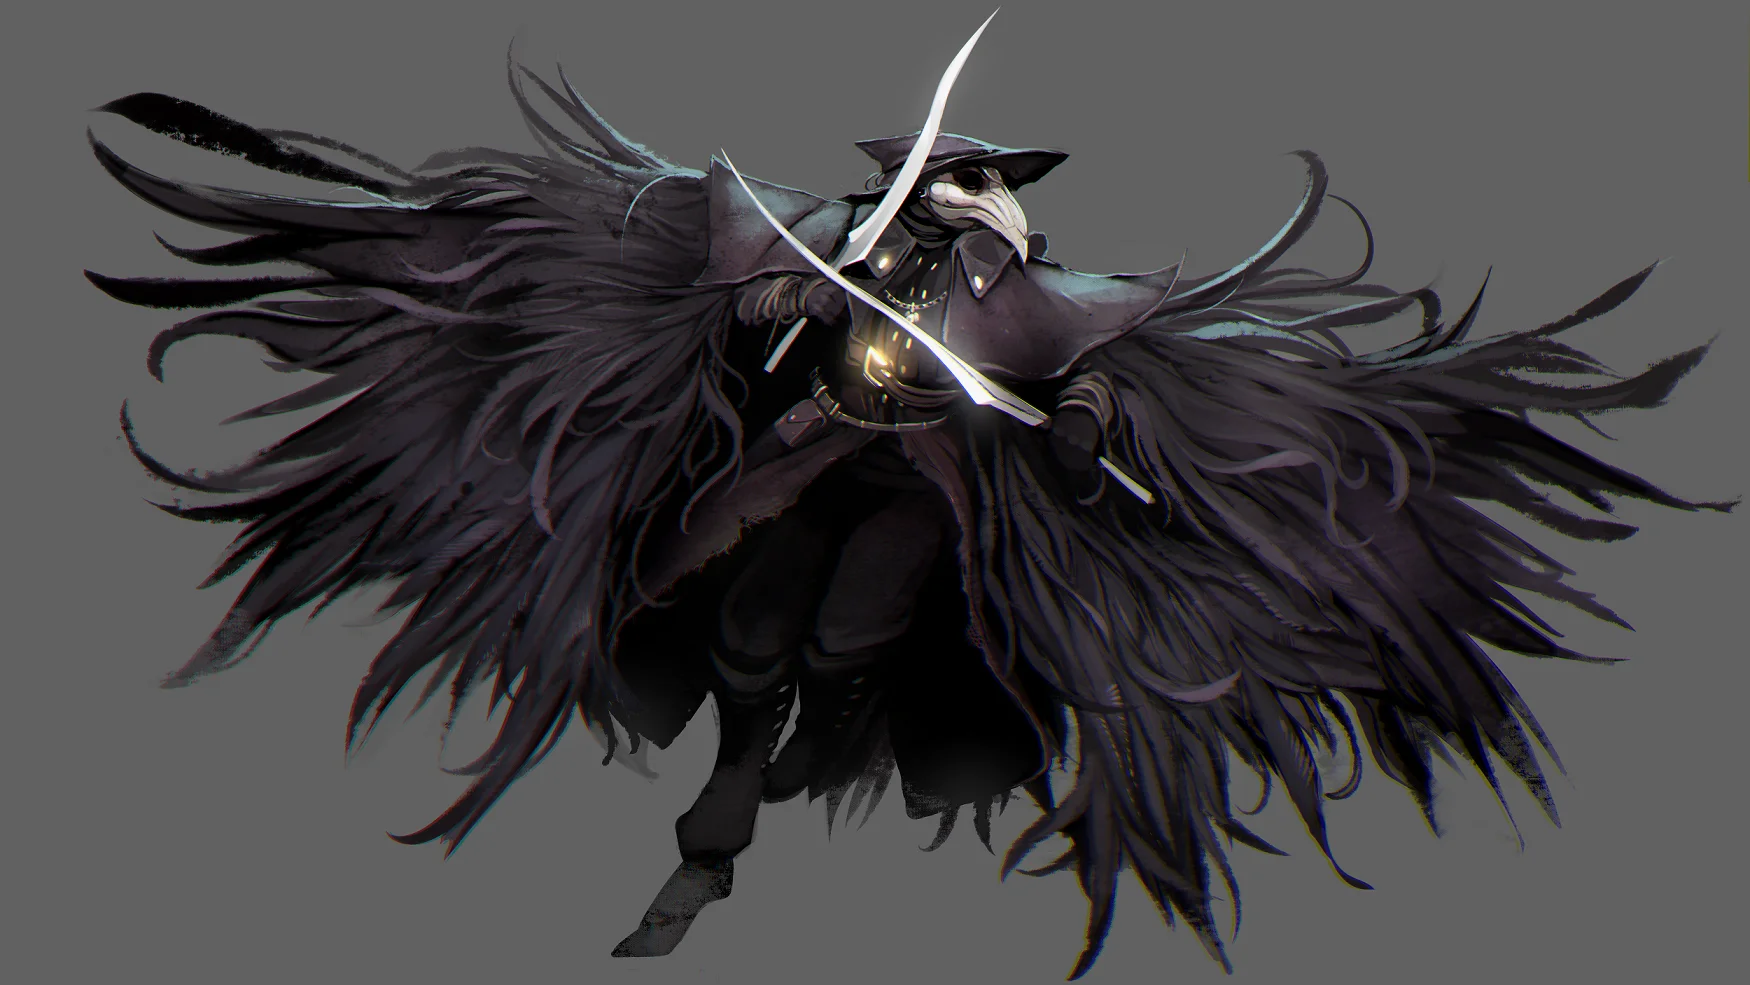 游戏《血源诅咒》中佩戴着鸟喙面具的猎人——“乌鸦”艾琳